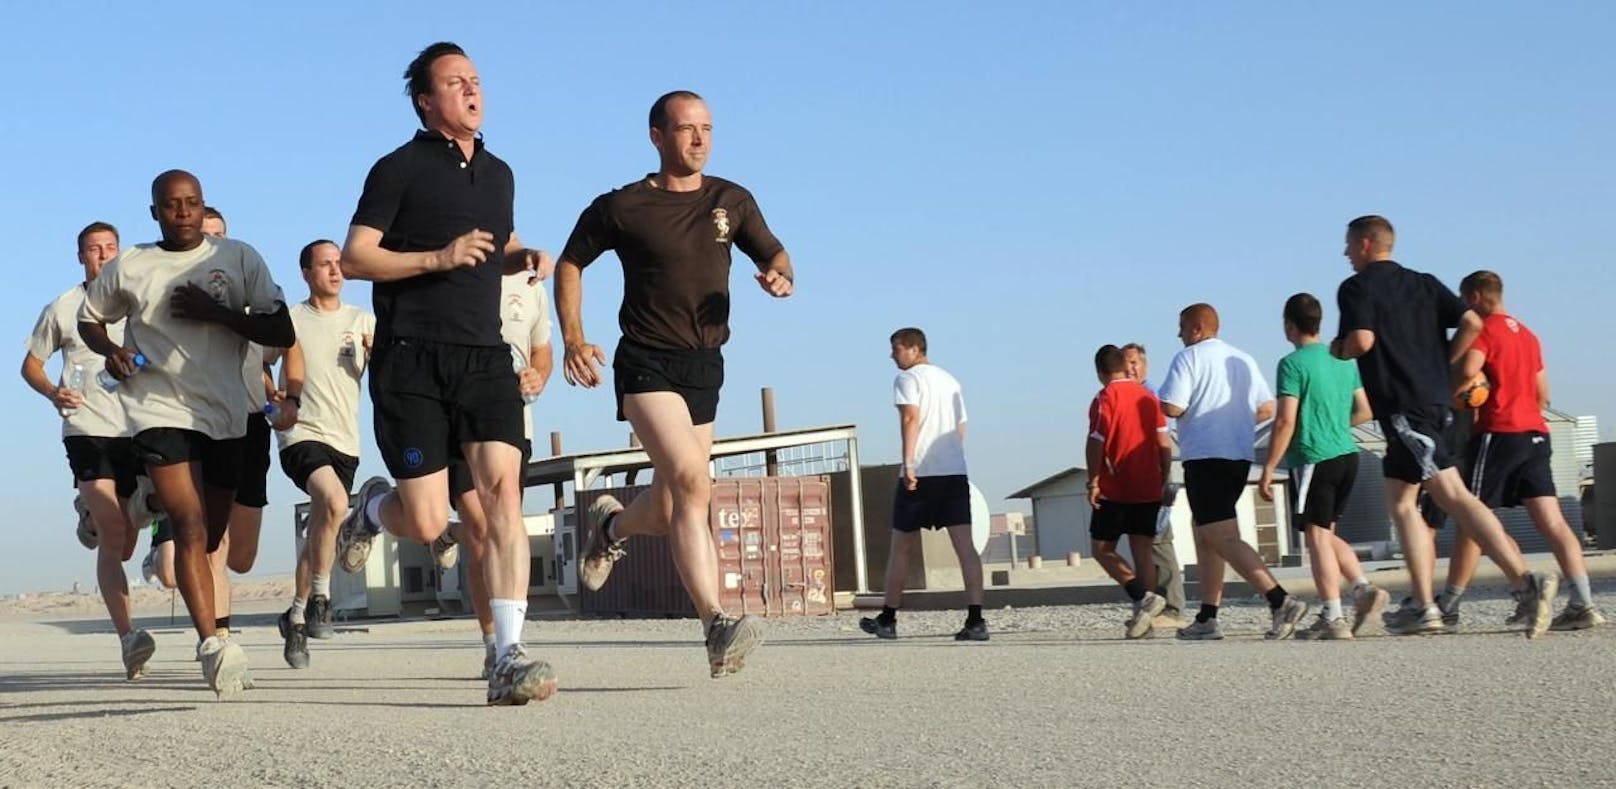 Wer einen Fitness-Tracker trägt, kann geortet werden: Der frühere britische Premierminister David Cameron joggt mit Soldaten in Afghanistan. (Archivbild)